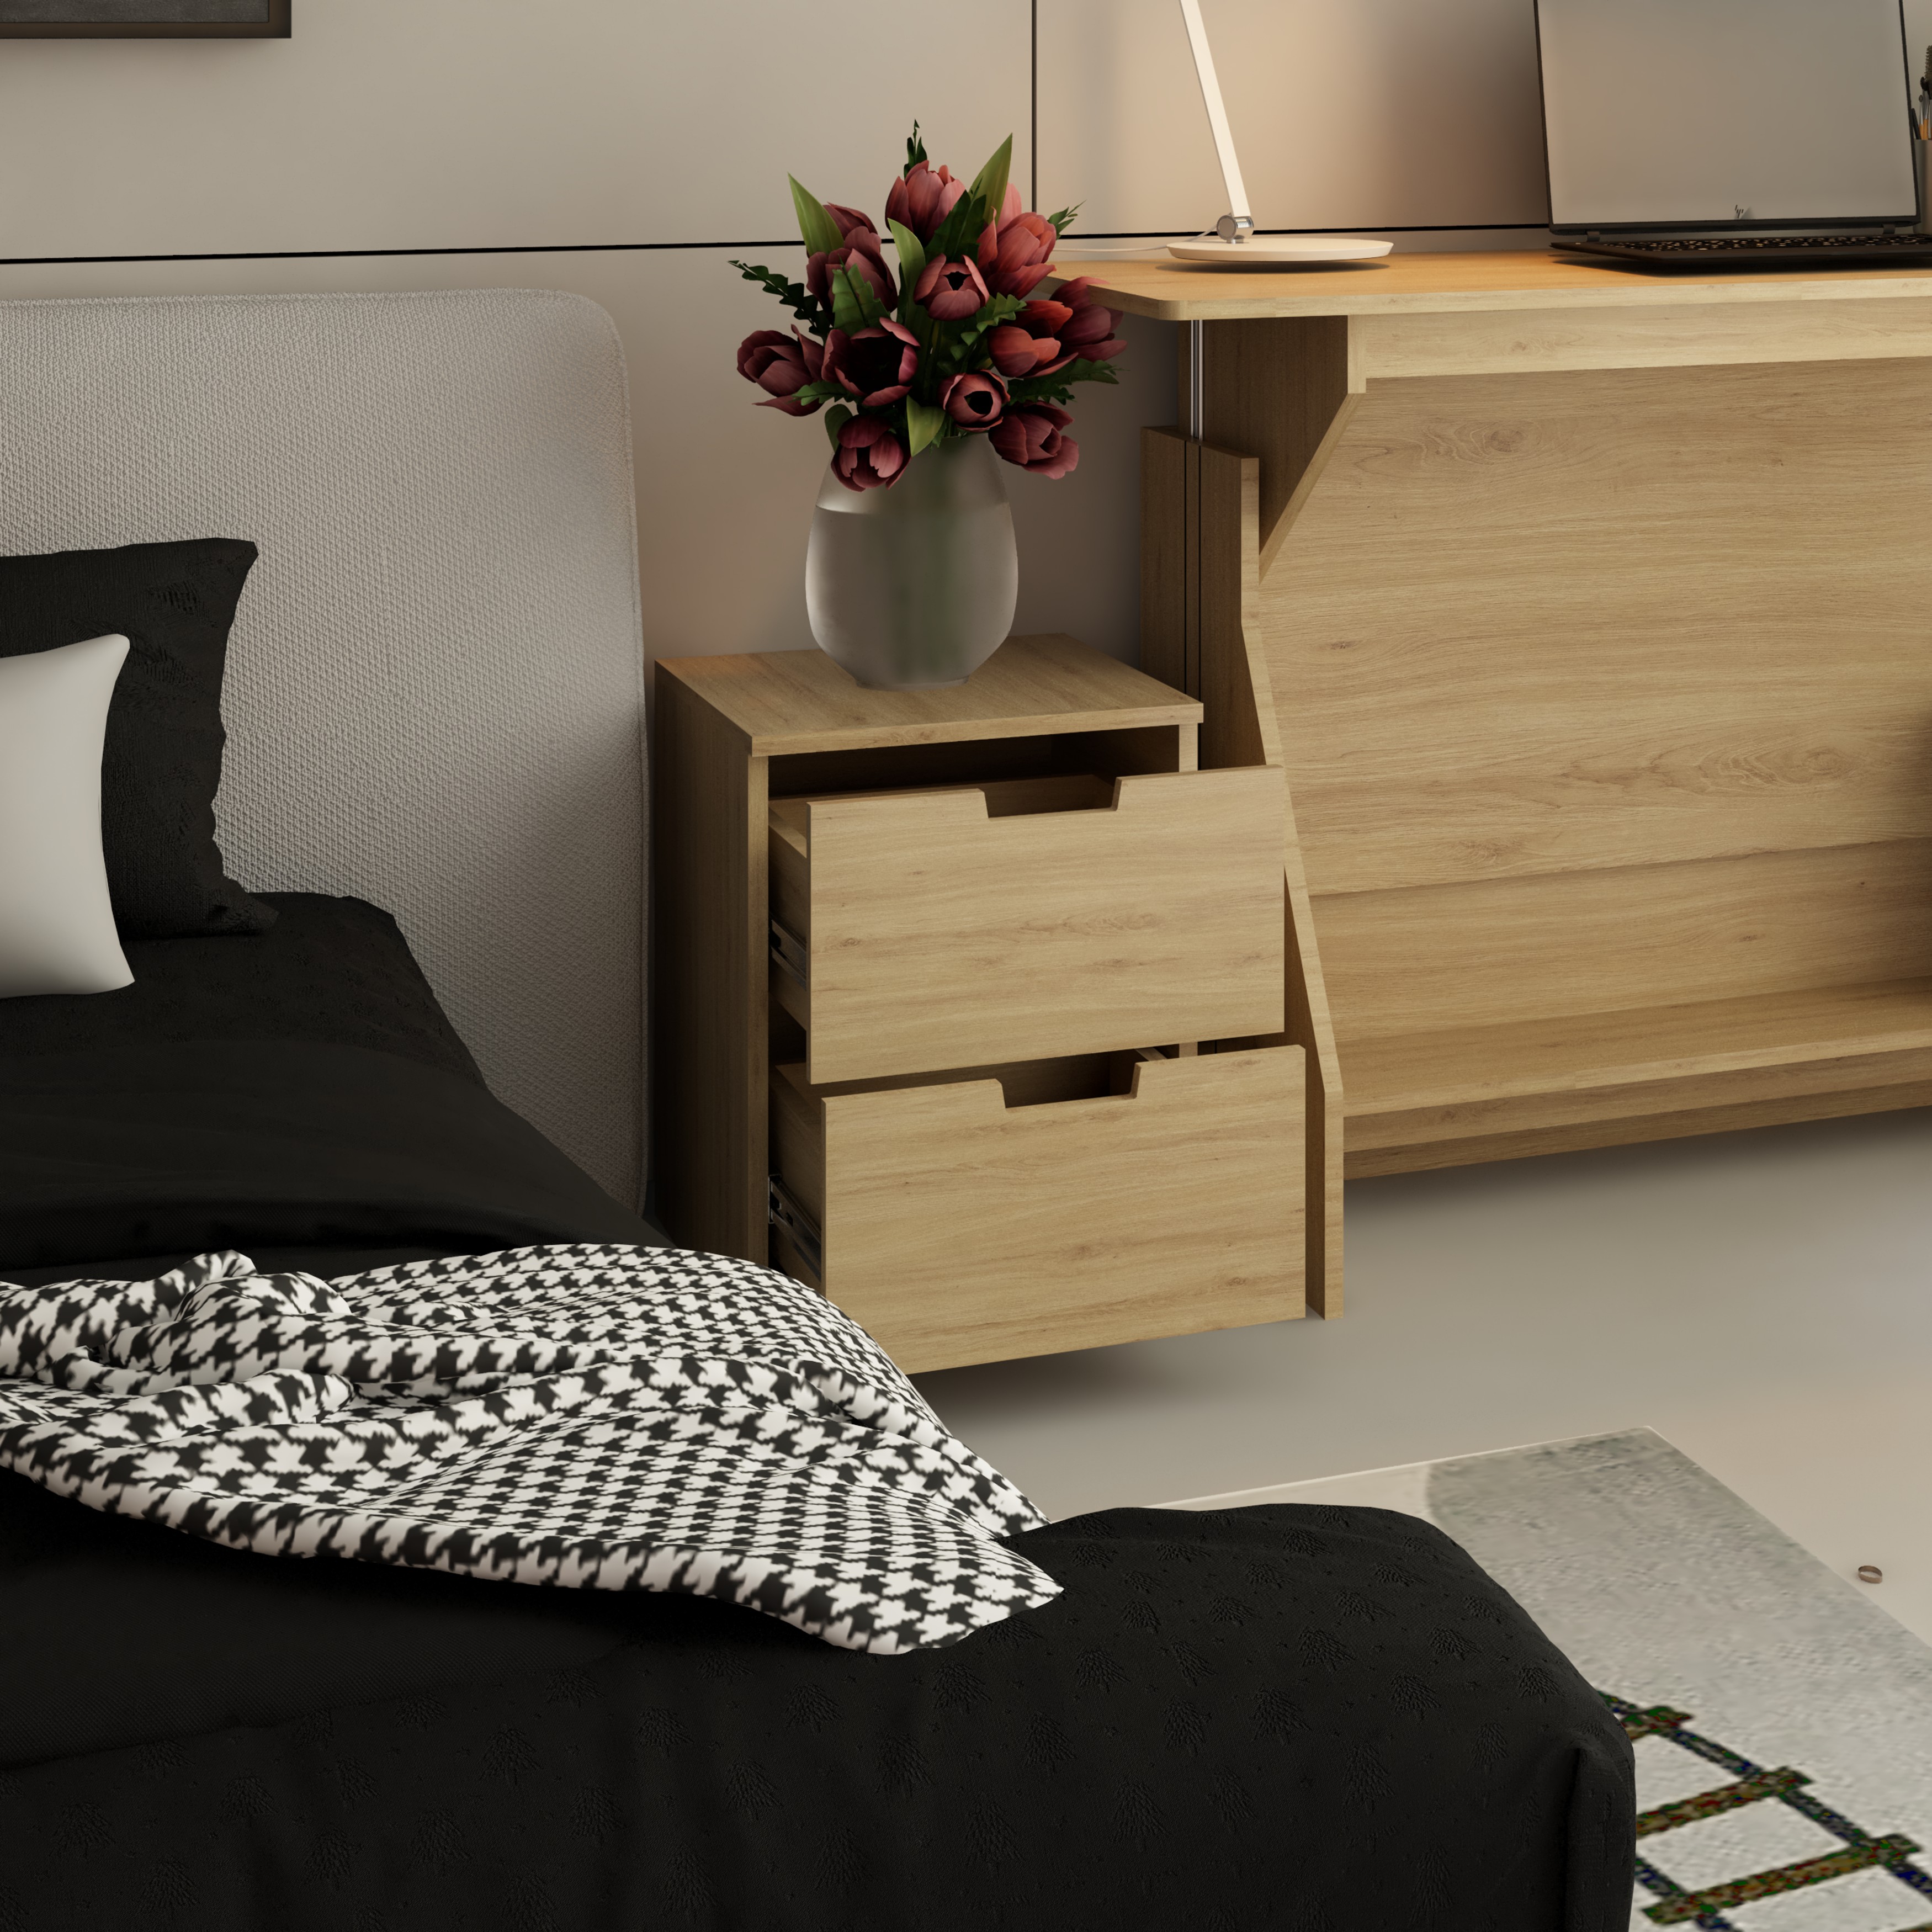 [Happy Home Furniture] SCANDINA, Táp đầu giường 2 ngăn kéo, 40cm x 46cm x 53cm ( DxRxC), THK_096